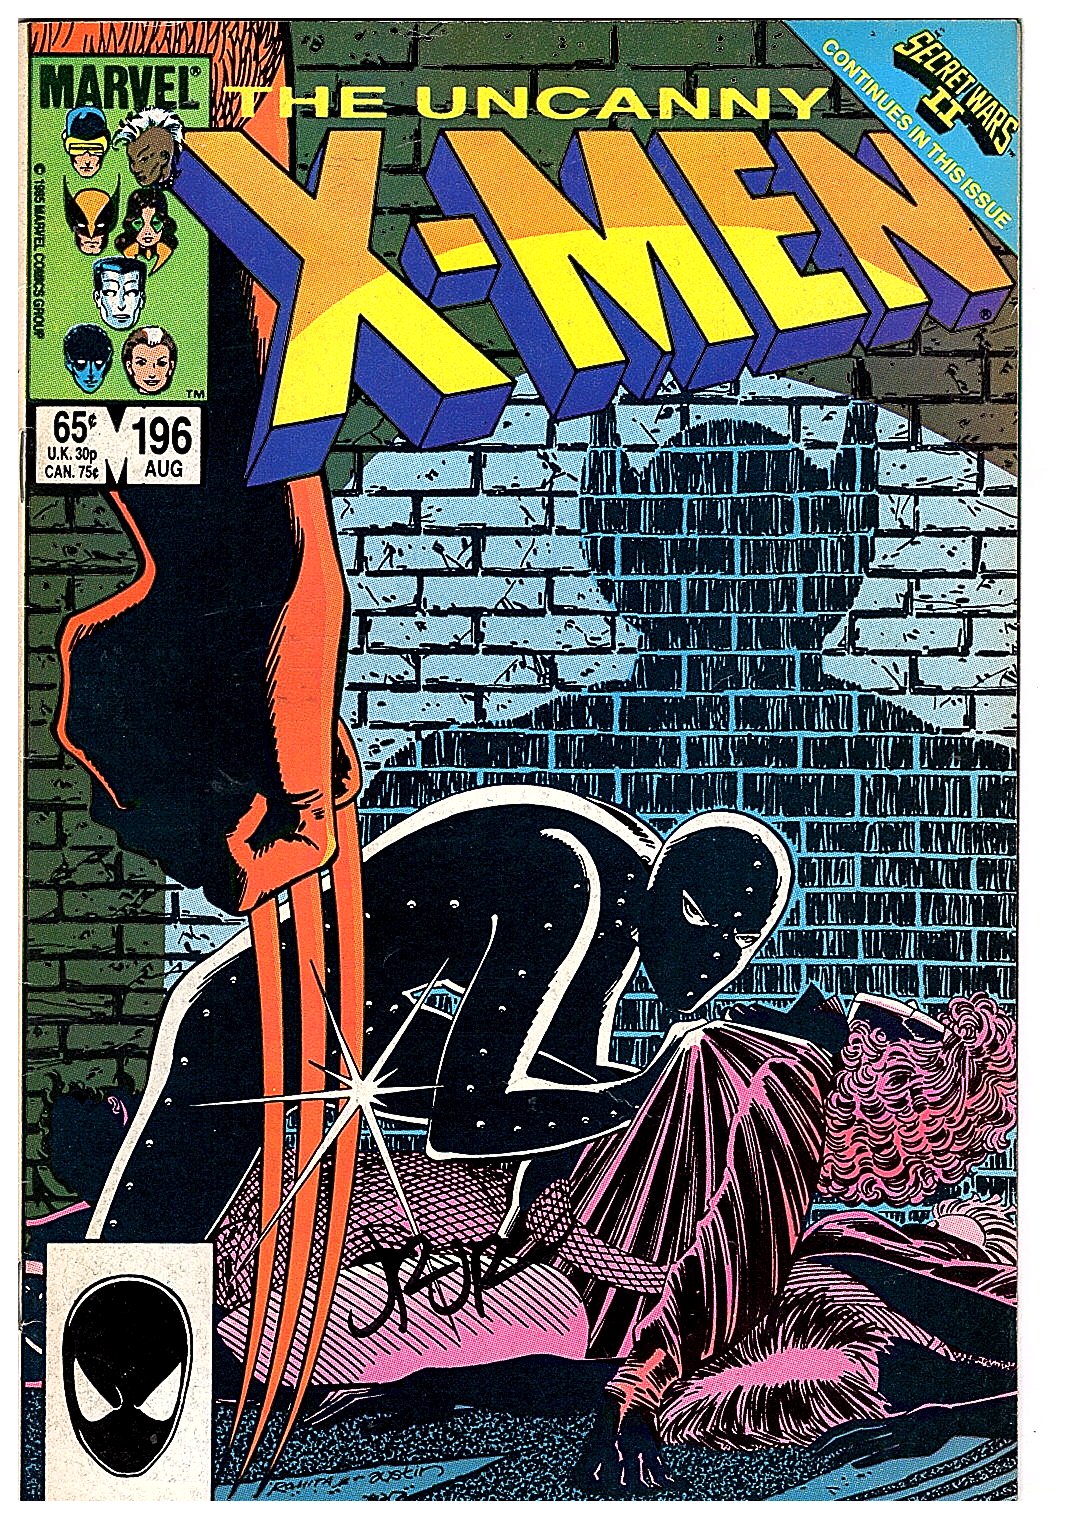 [Signed] Uncanny X-Men 196